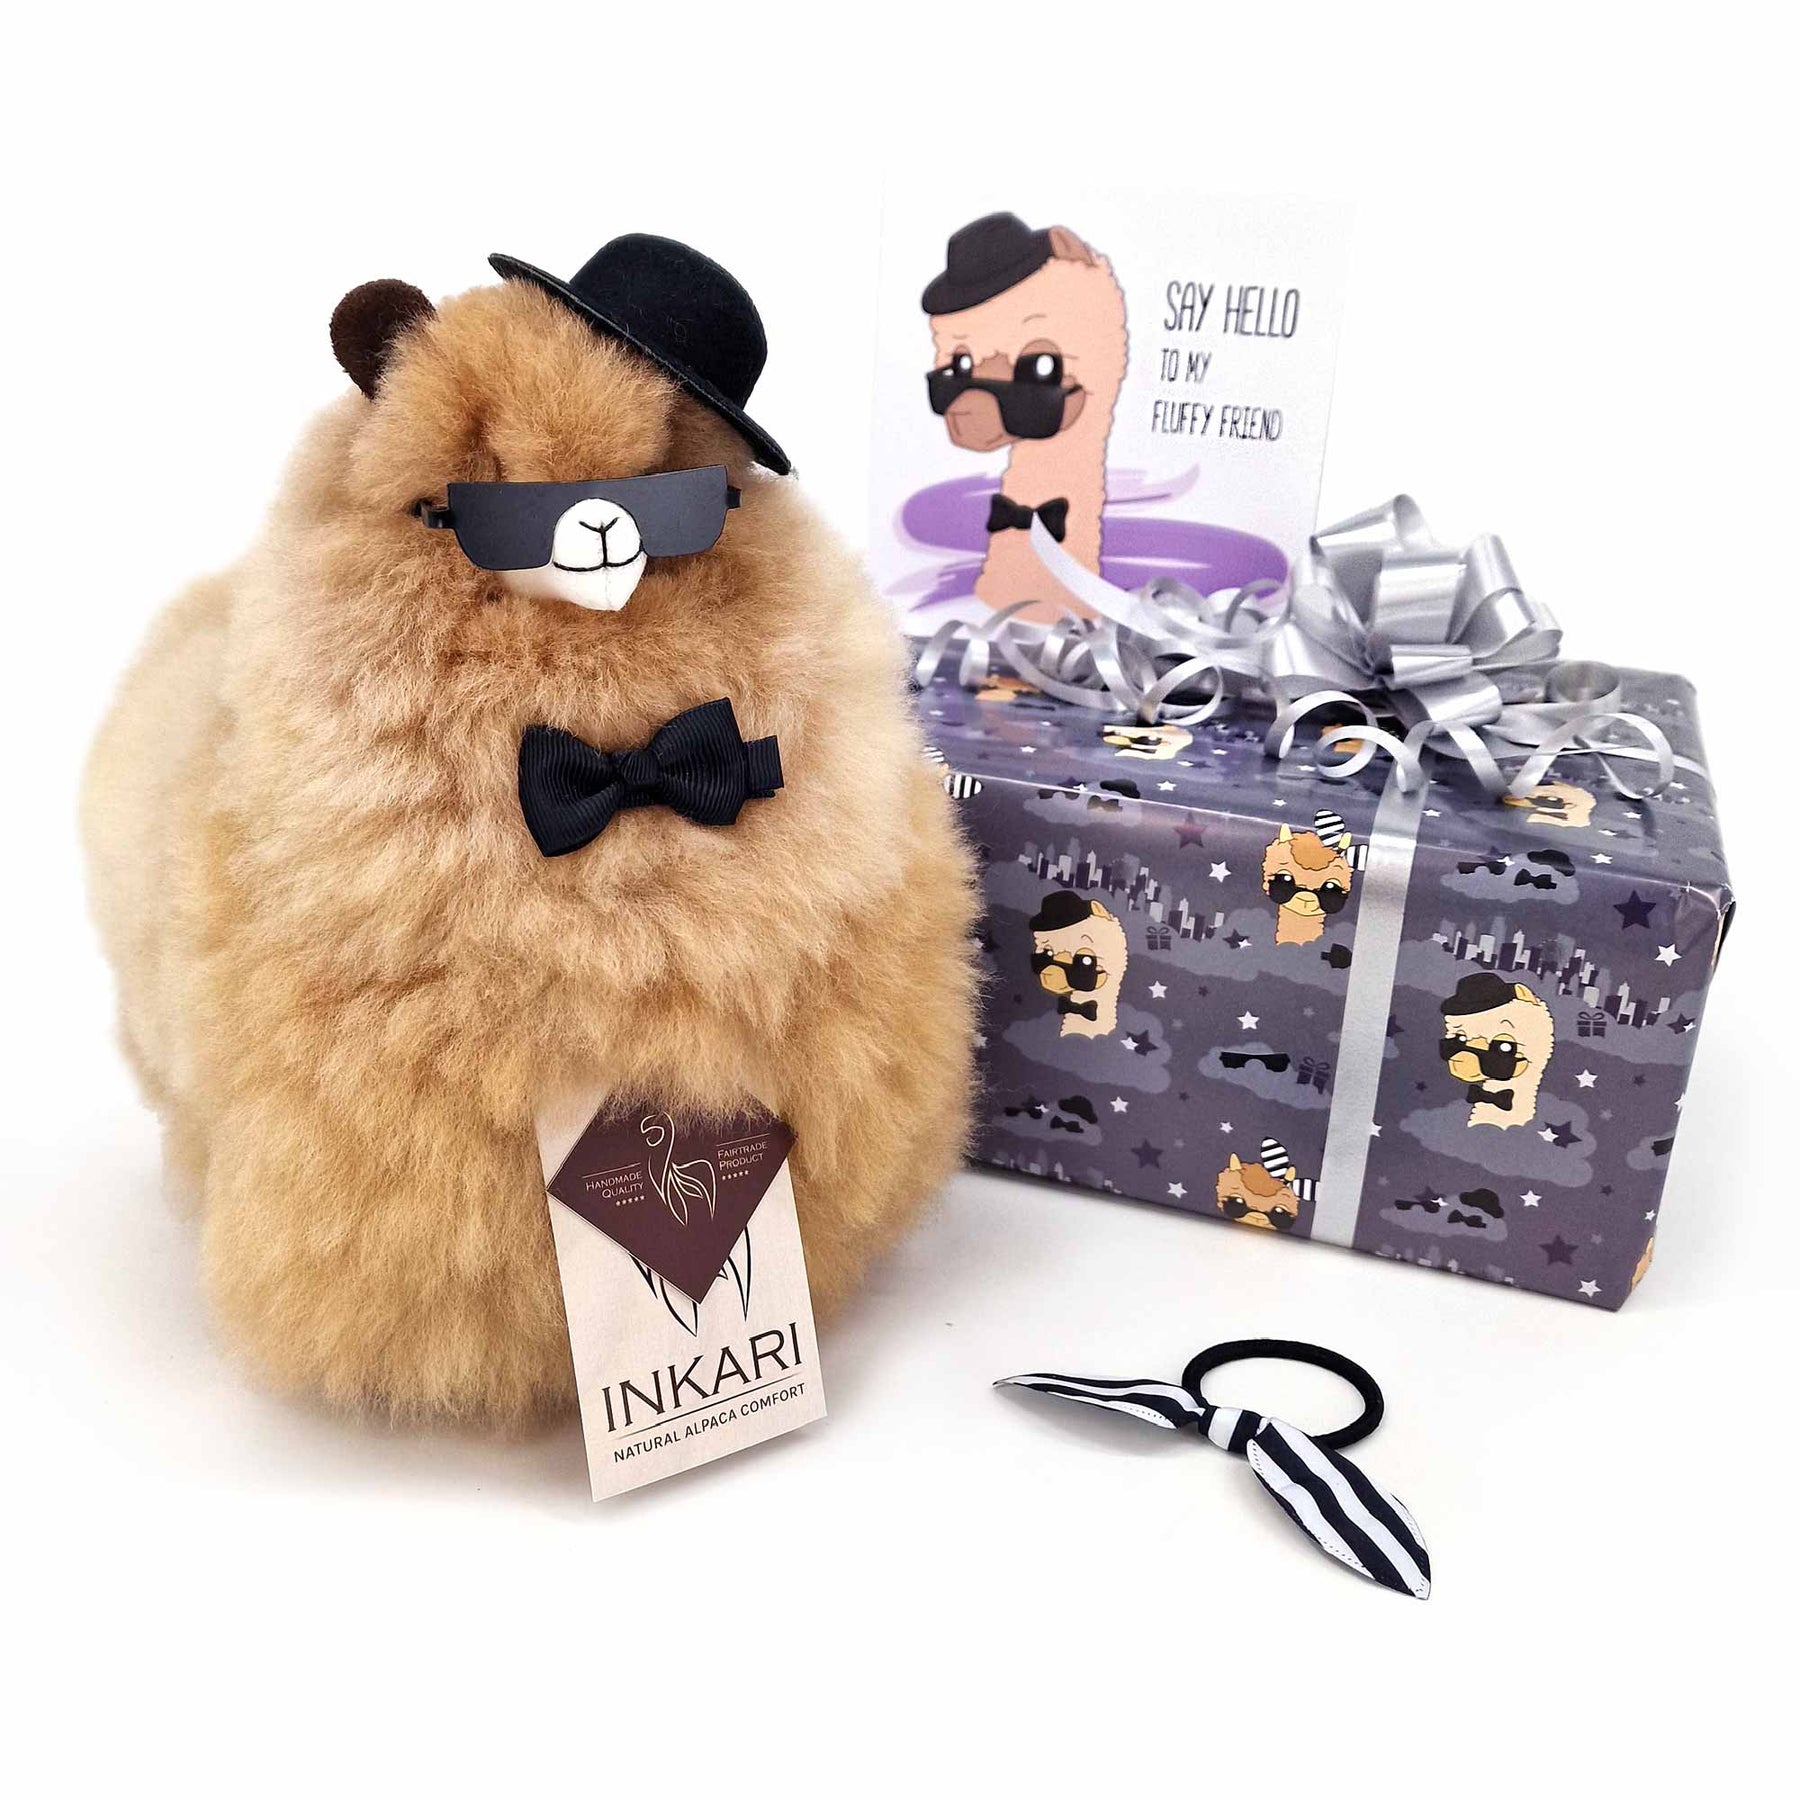 Fluff-Box – Cool – kleines Alpaka-Spielzeug